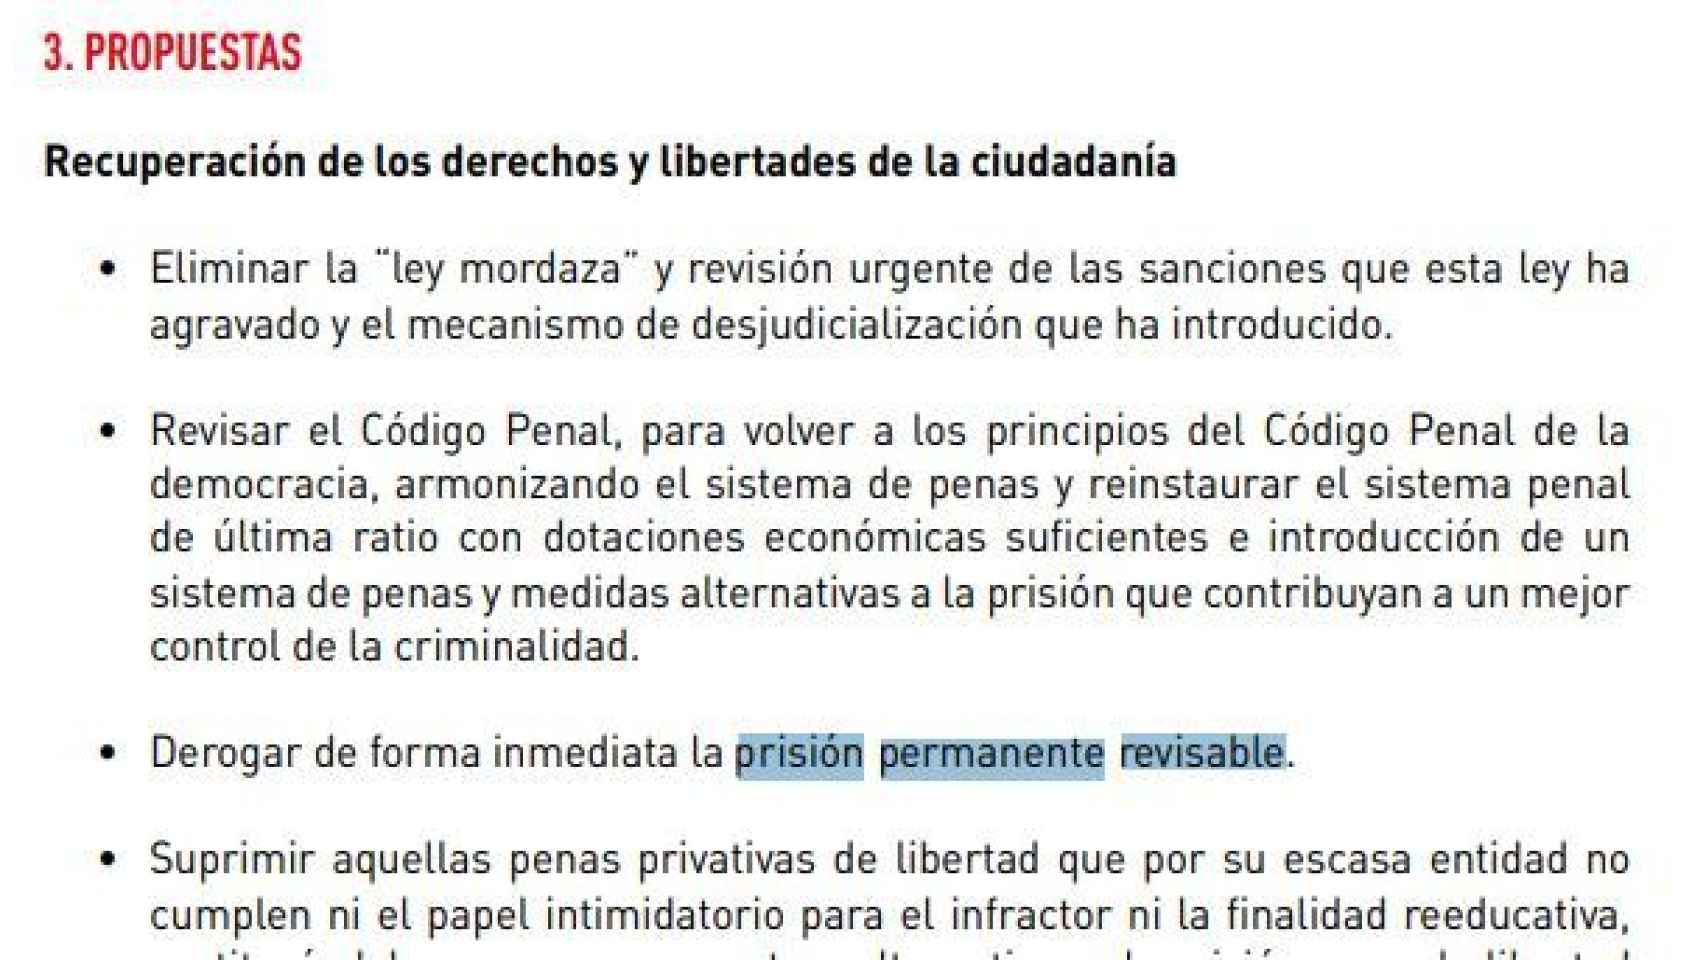 Programa electoral del PSOE de 2016, con el compromiso de derogar la prisión permanente./